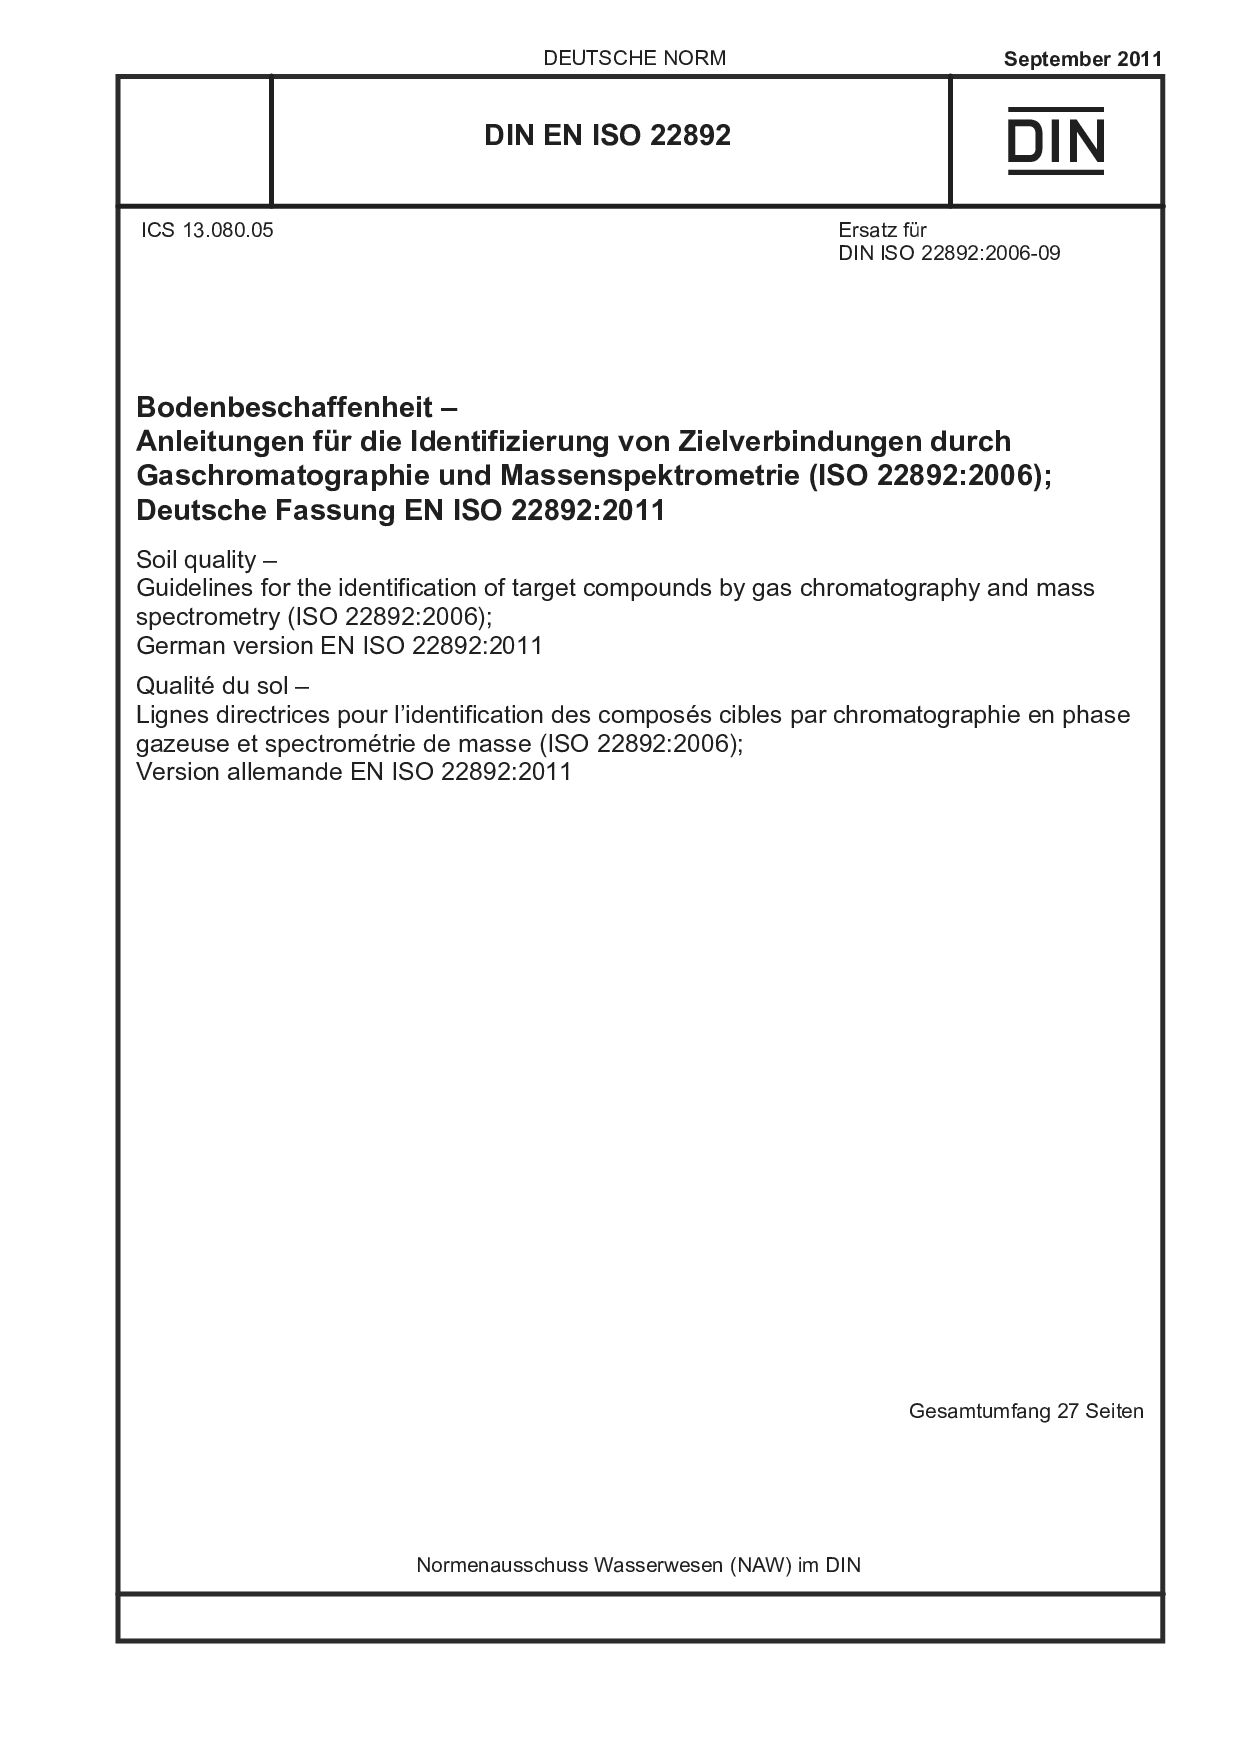 DIN EN ISO 22892:2011